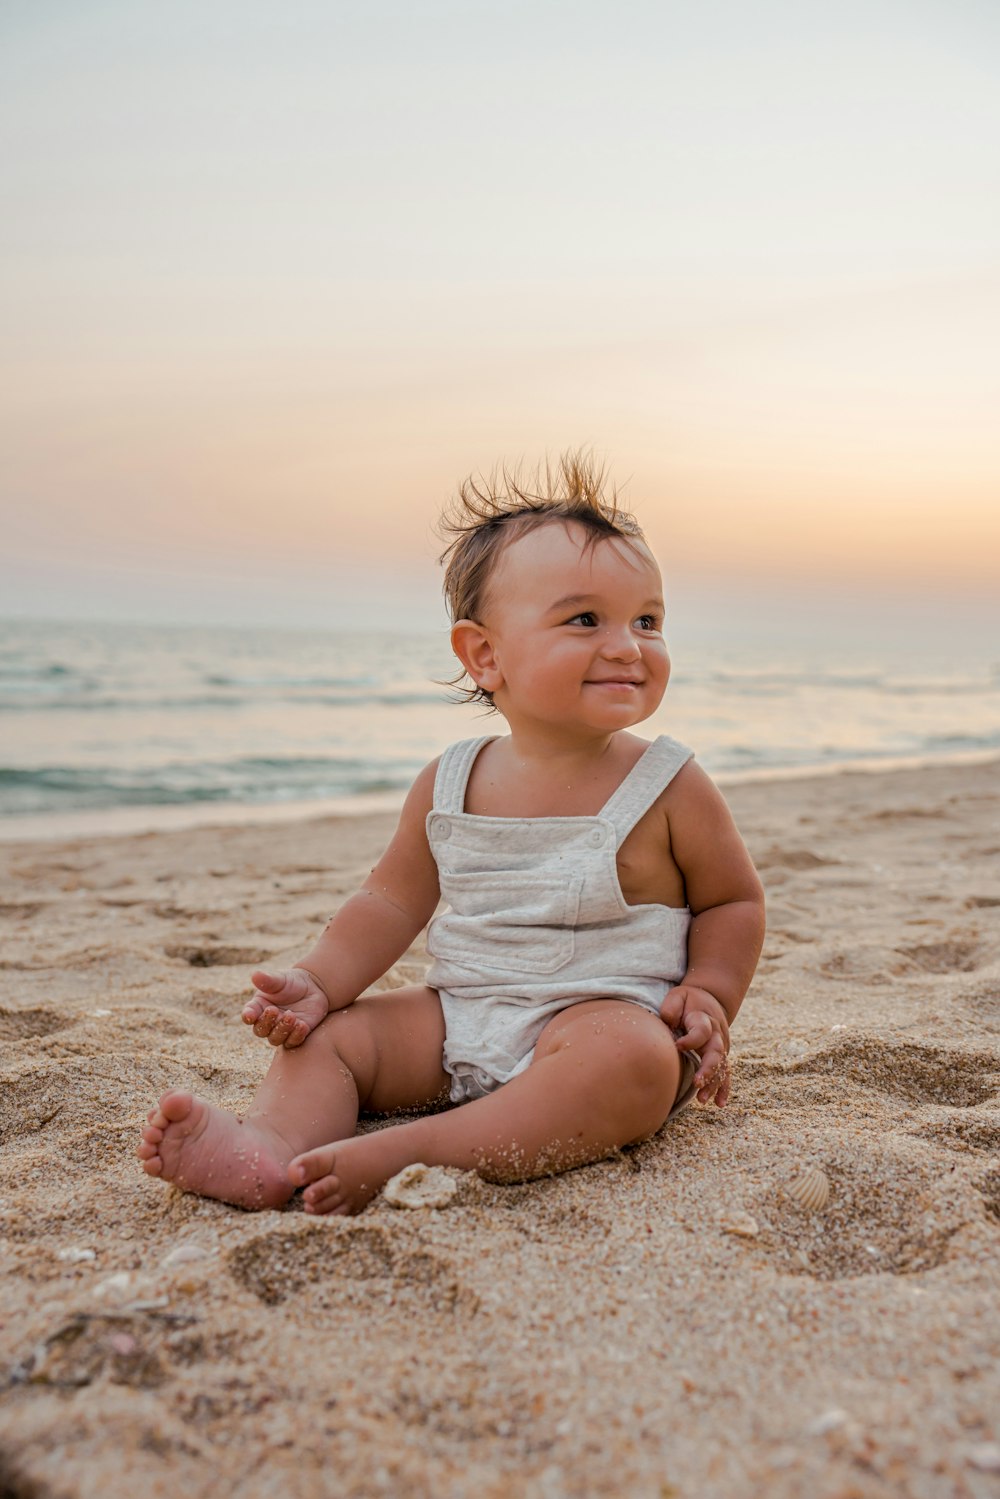 해변의 모래에 앉아 있는 아기